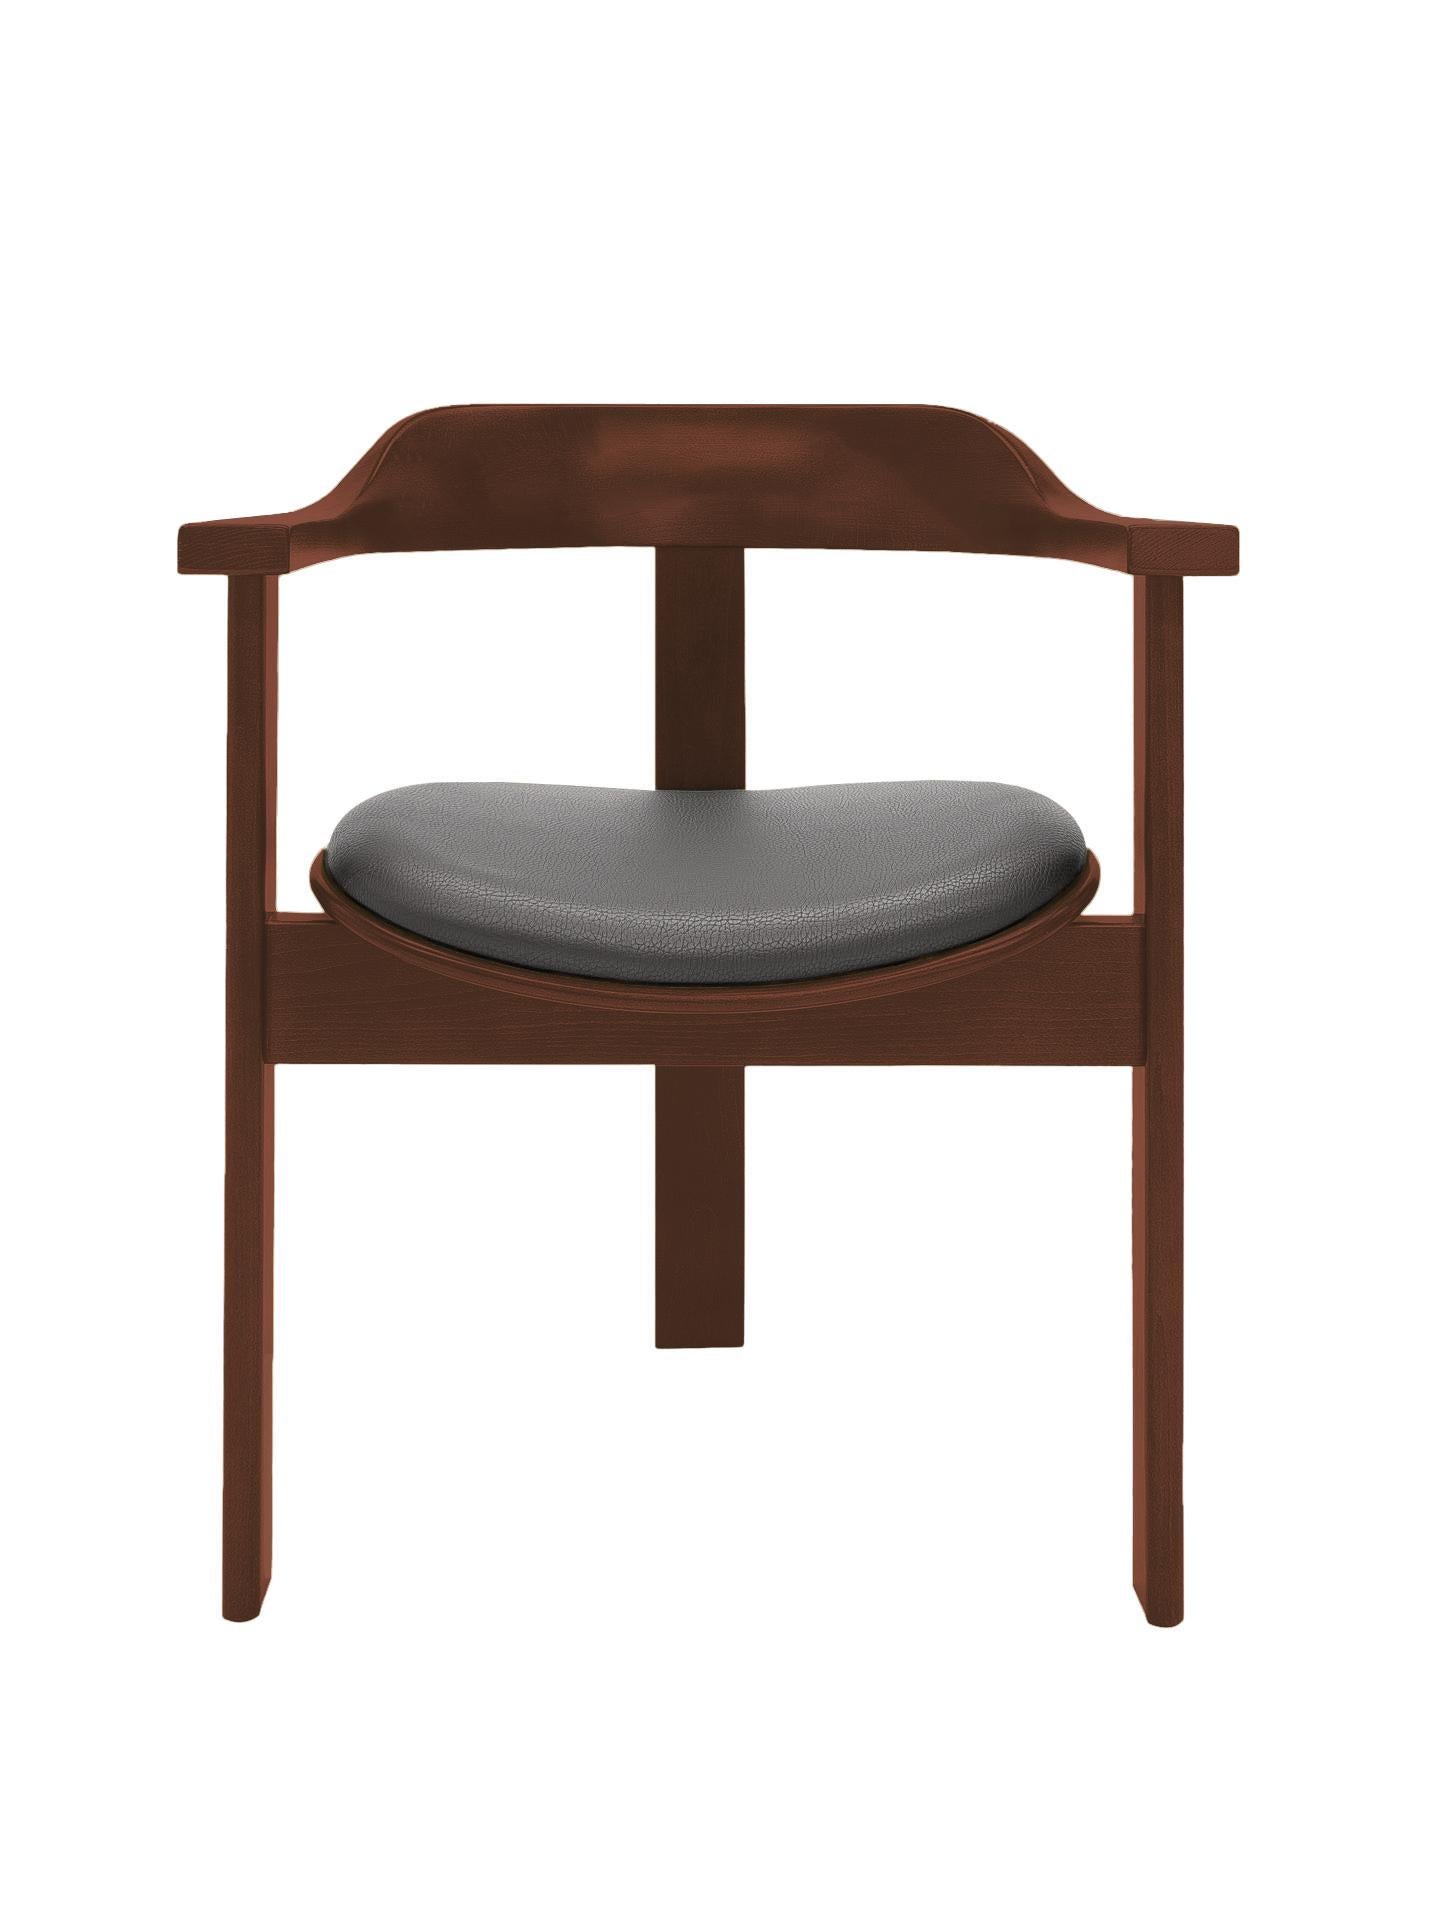 La chaise Haussmann est une pièce vibrante et intemporelle de confort et d'élégance.

Cette chaise unique à trois pieds a été présentée pour la première fois à l'